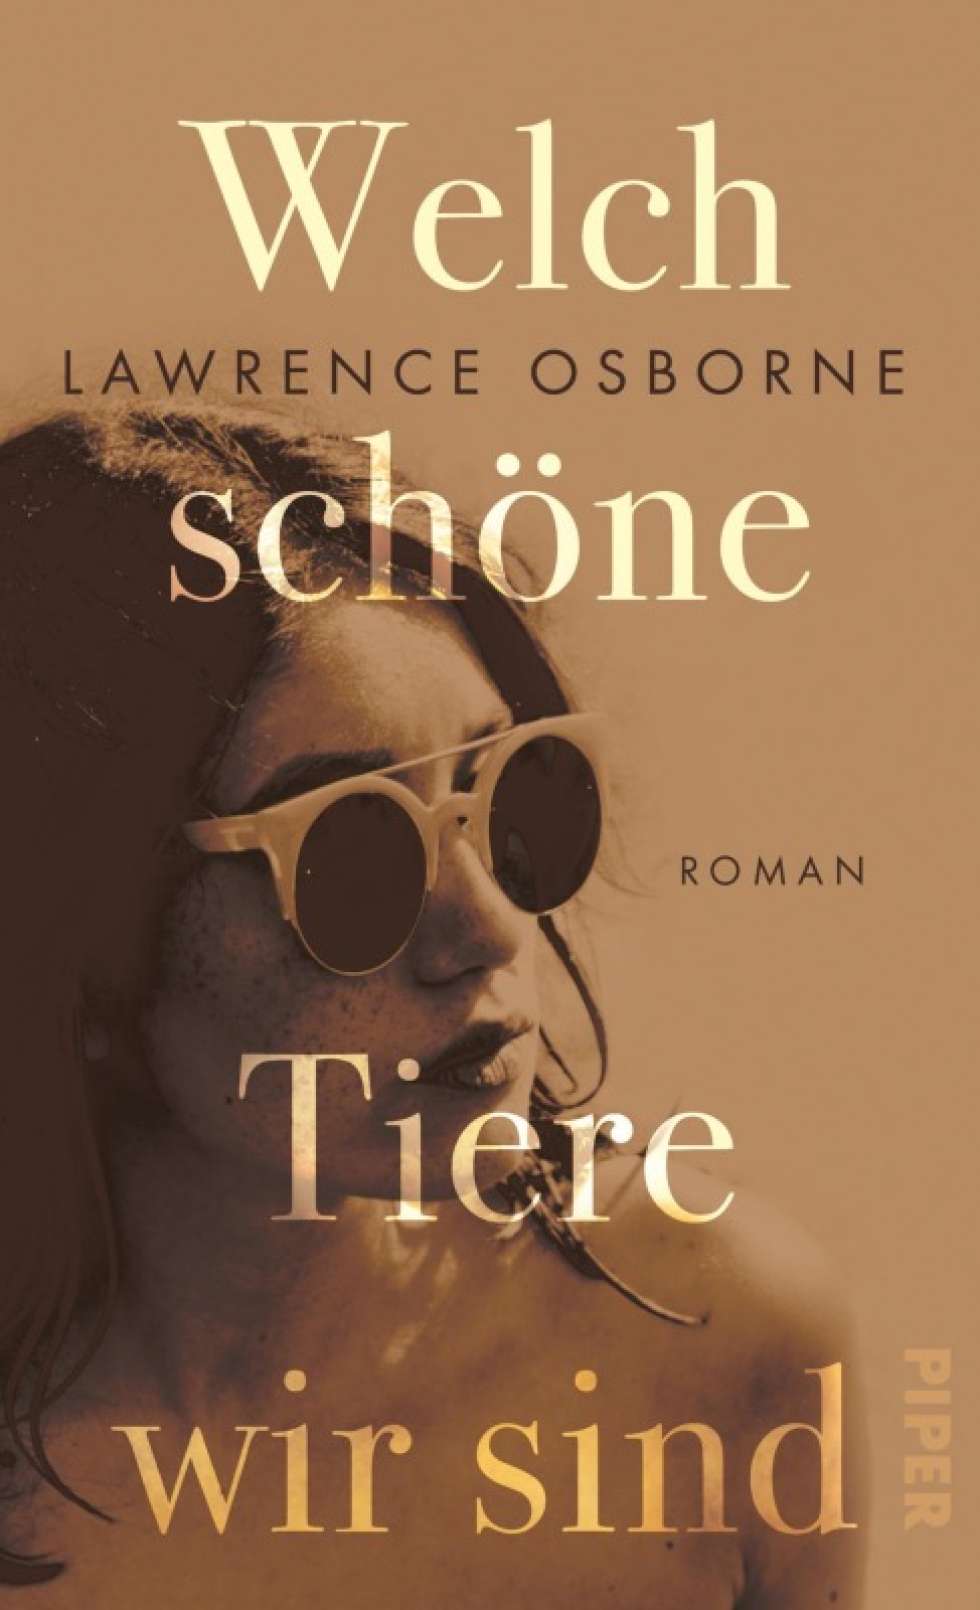 Lawrence Osborne gilt als Erbe von Graham Greene. «Welch schöne Tiere wir sind» ist sein vierter Roman.